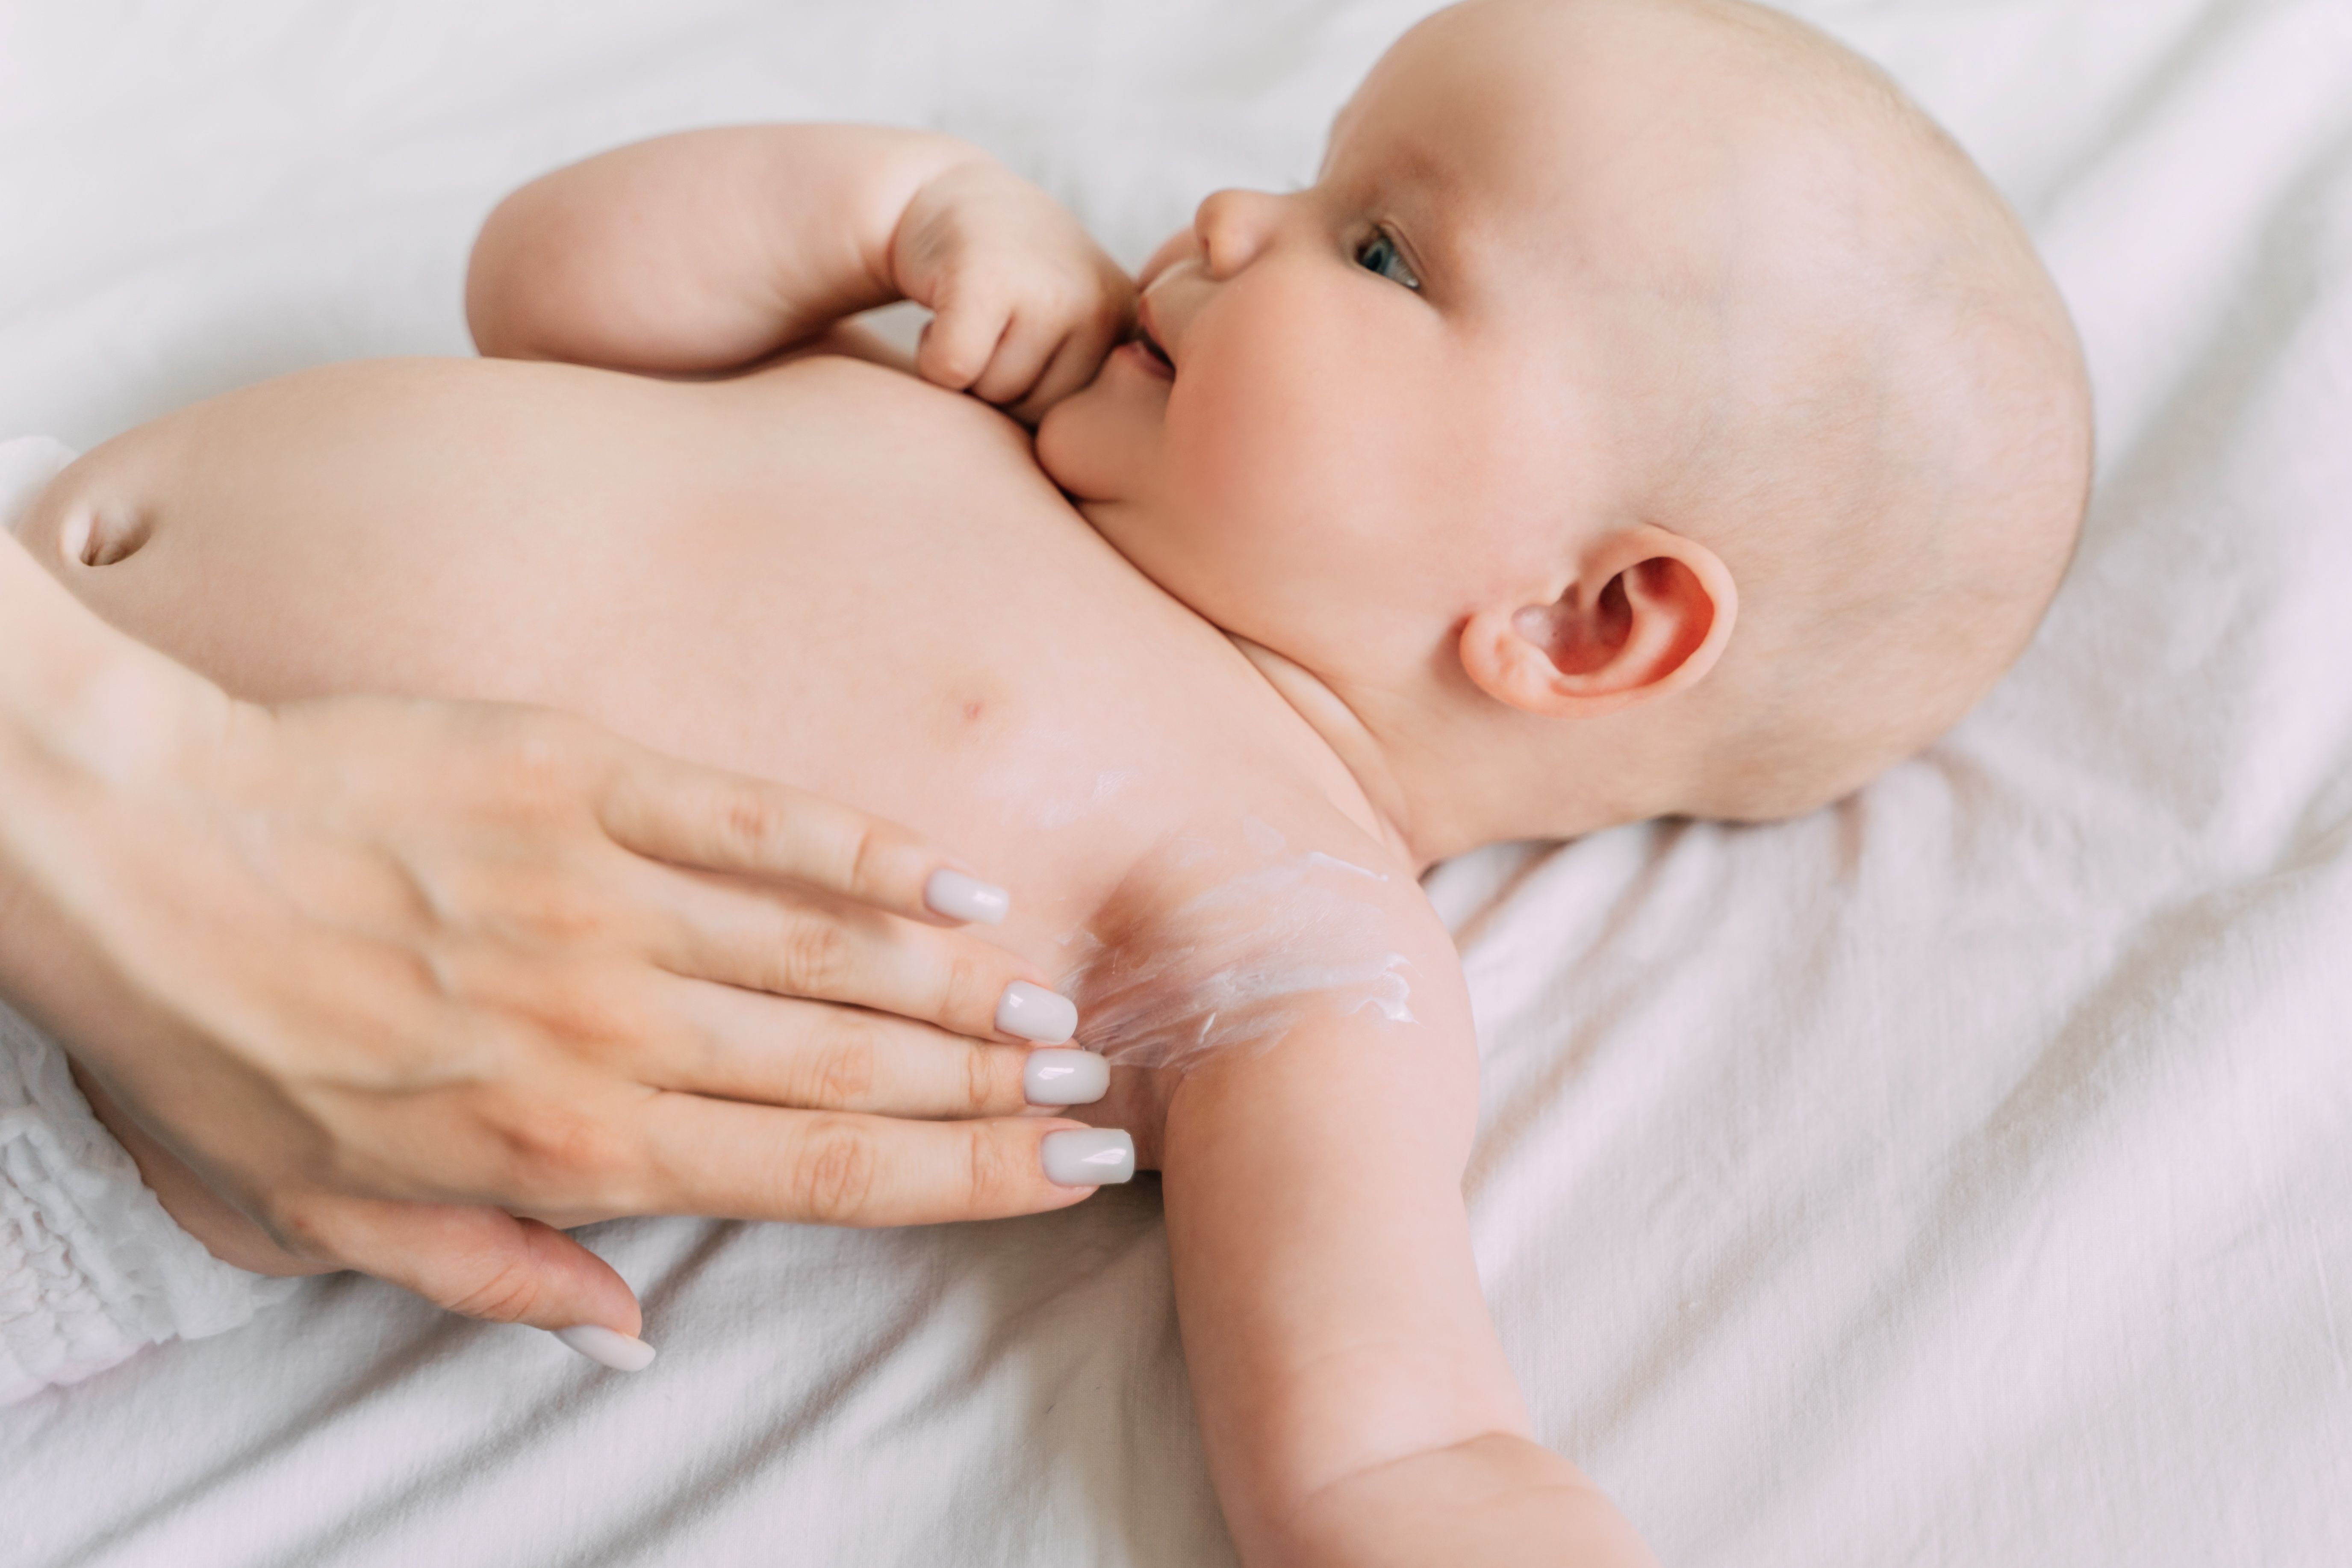 Crema Hidratante JOHNSON'S Baby Avena x 200ml - Patojitos - El mejor  cuidado para tú Bebé